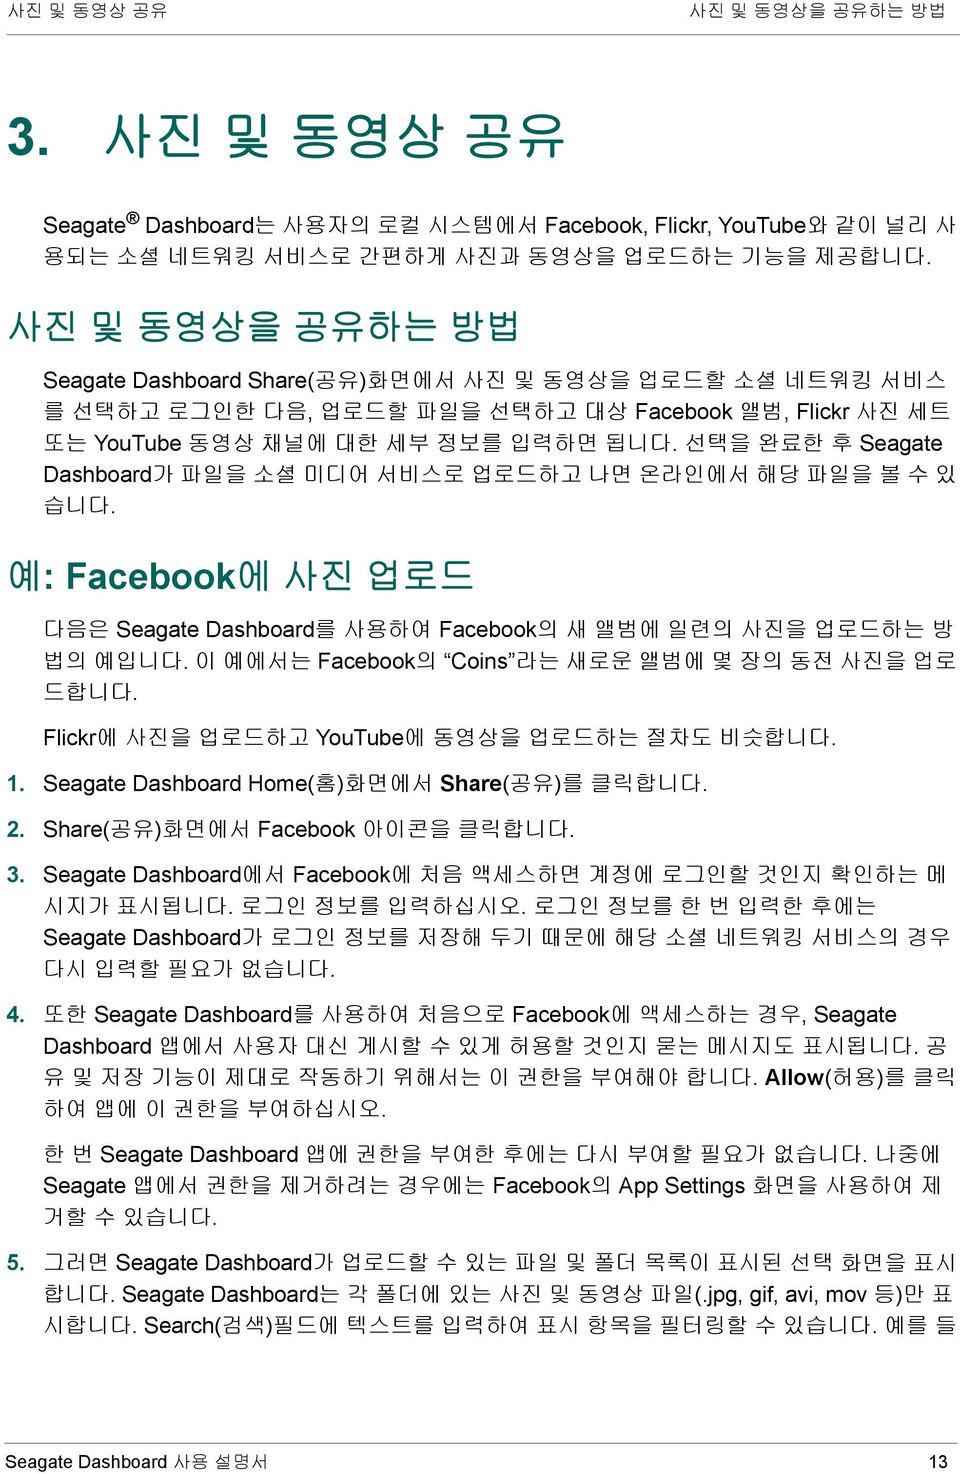 선택을 완료한 후 Seagate Dashboard가 파일을 소셜 미디어 서비스로 업로드하고 나면 온라인에서 해당 파일을 볼 수 있 습니다. 예: Facebook에 사진 업로드 다음은 Seagate Dashboard를 사용하여 Facebook의 새 앨범에 일련의 사진을 업로드하는 방 법의 예입니다.